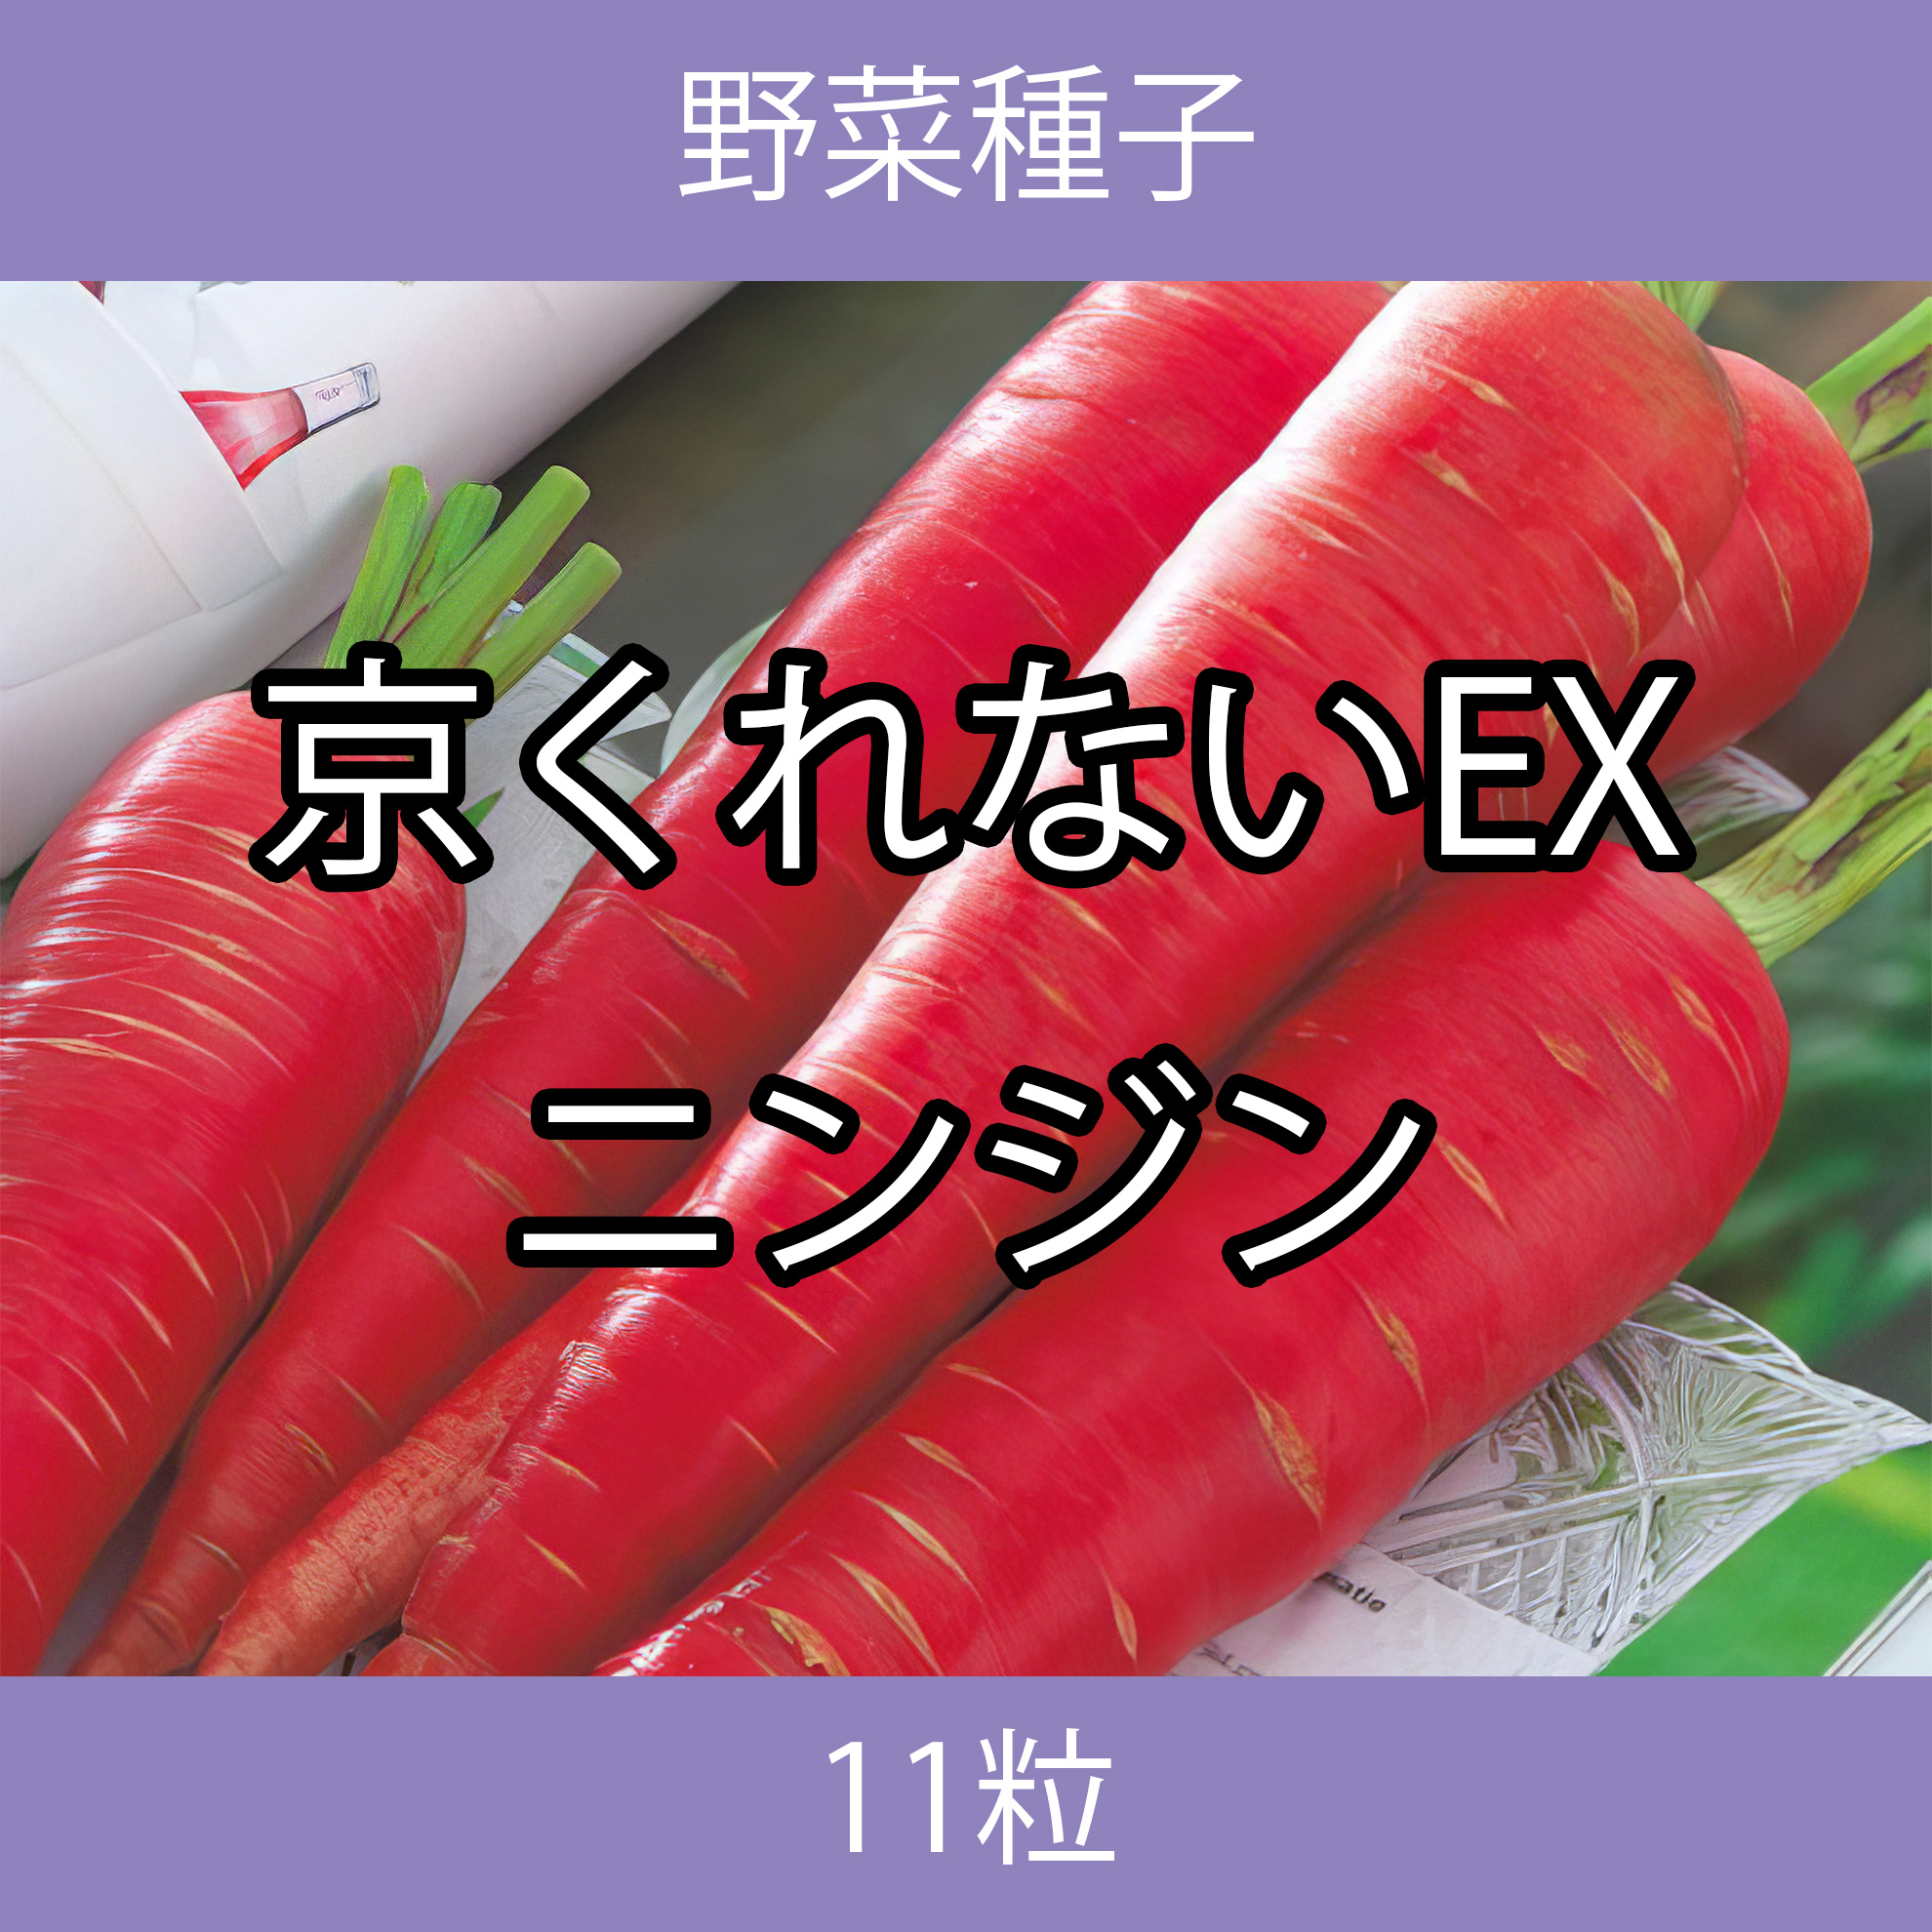 野菜種子 TVF03 京くれないEXニンジン 11粒